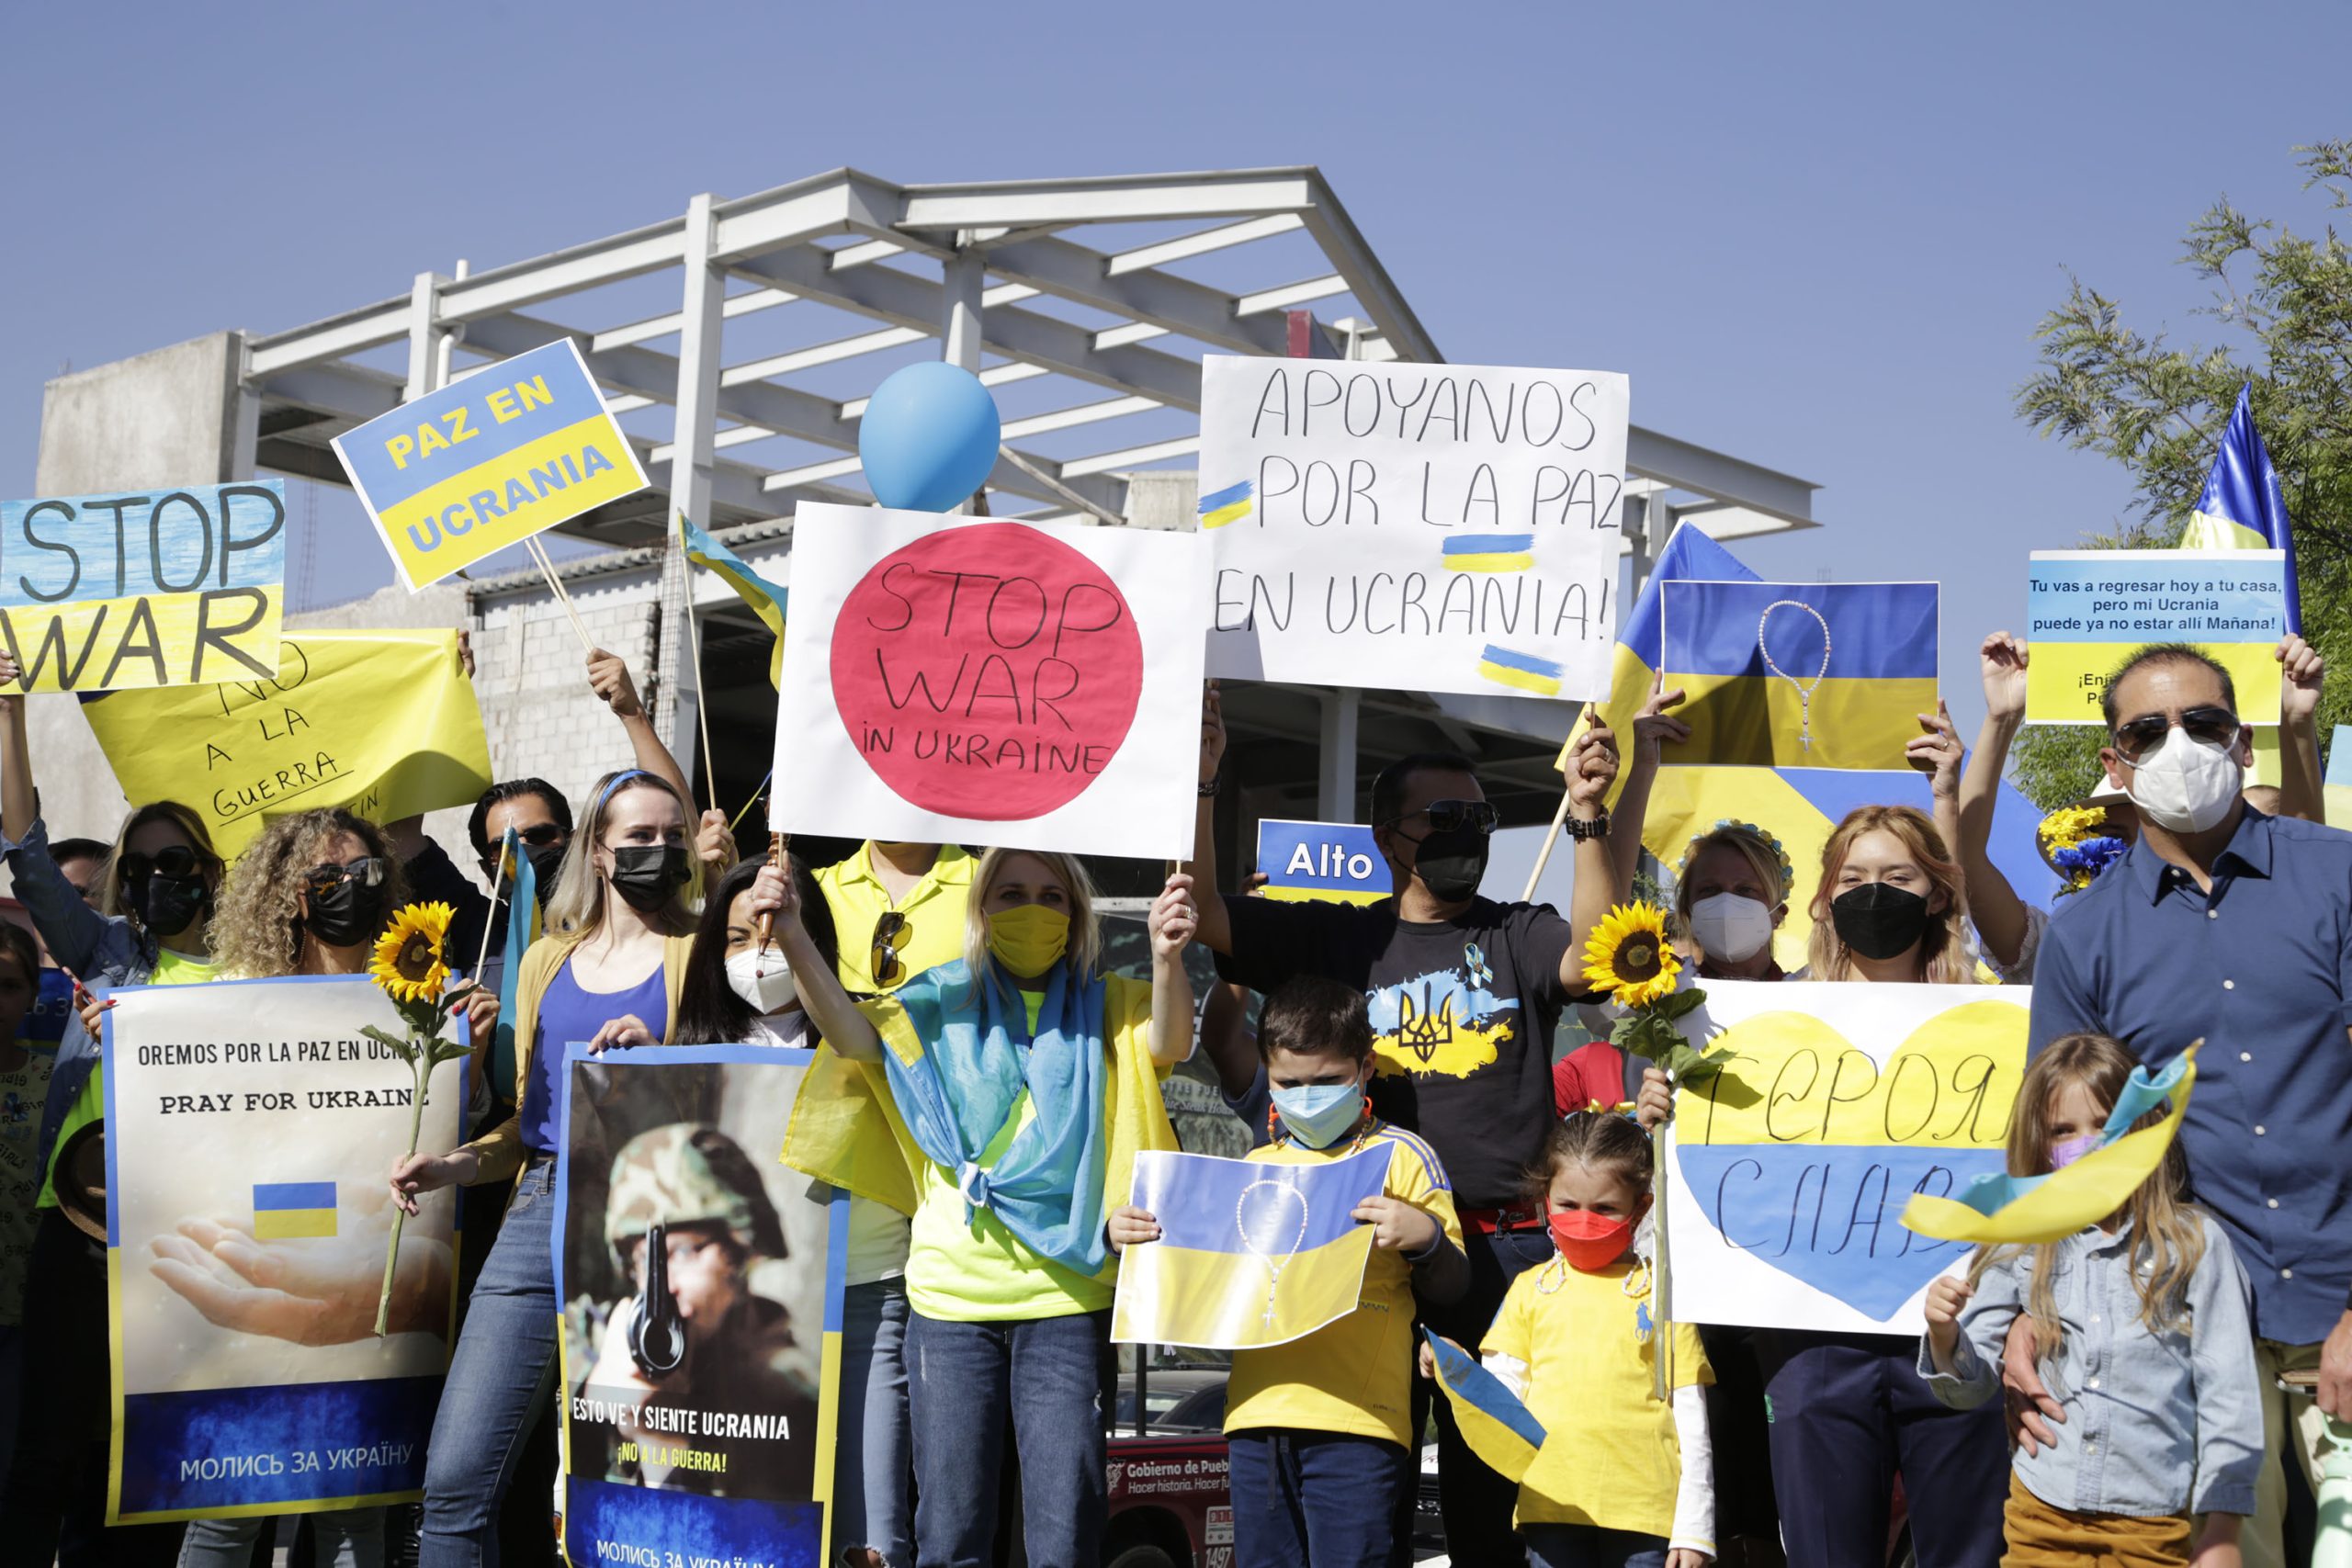 ¡Alto a la guerra!, piden ucranianos que residen en Puebla